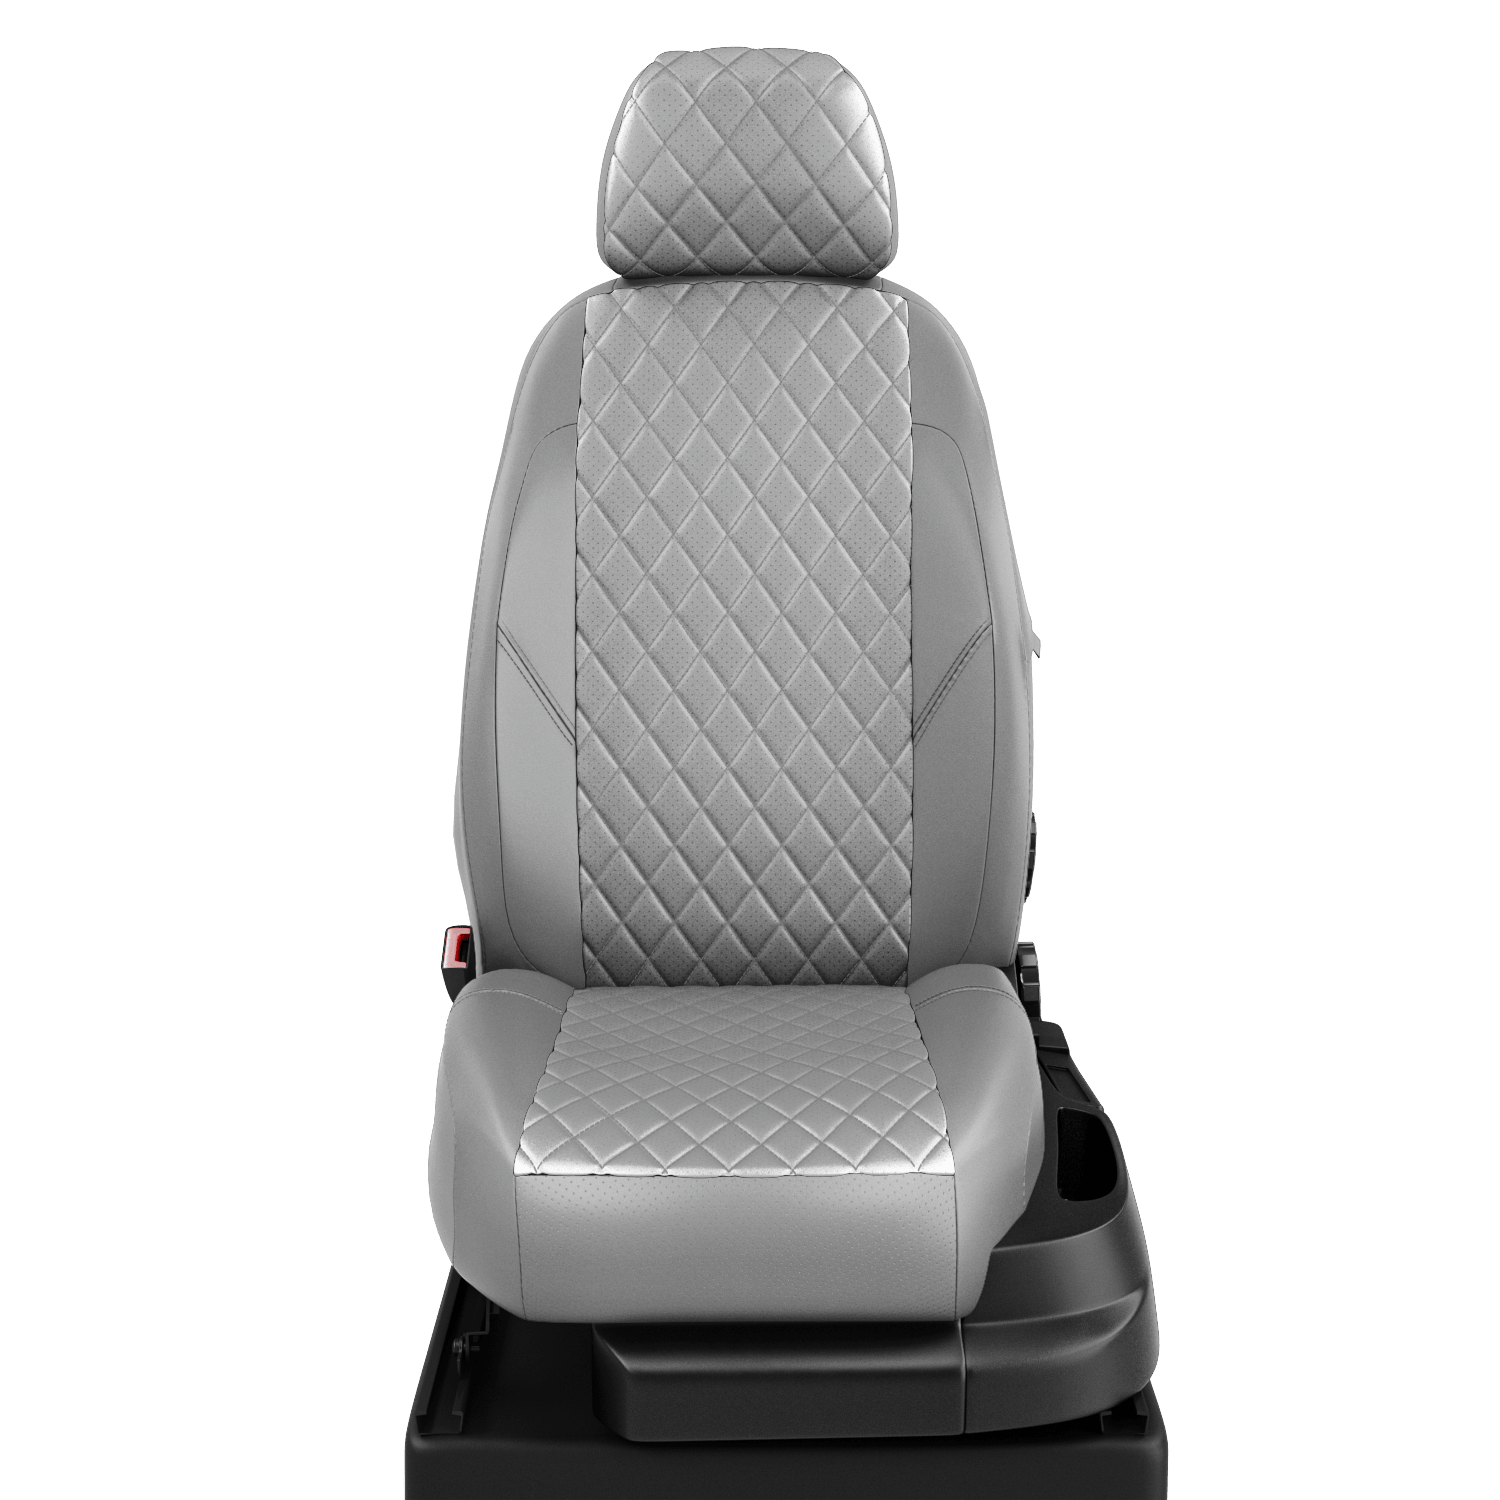 Чехлы на сиденья ВАЗ Лада Приора 2 (VAZ Lada Priora 2) с 2014-н.в. седан 5 мест серый-серый VZ29-2113-EC23-R-sgr